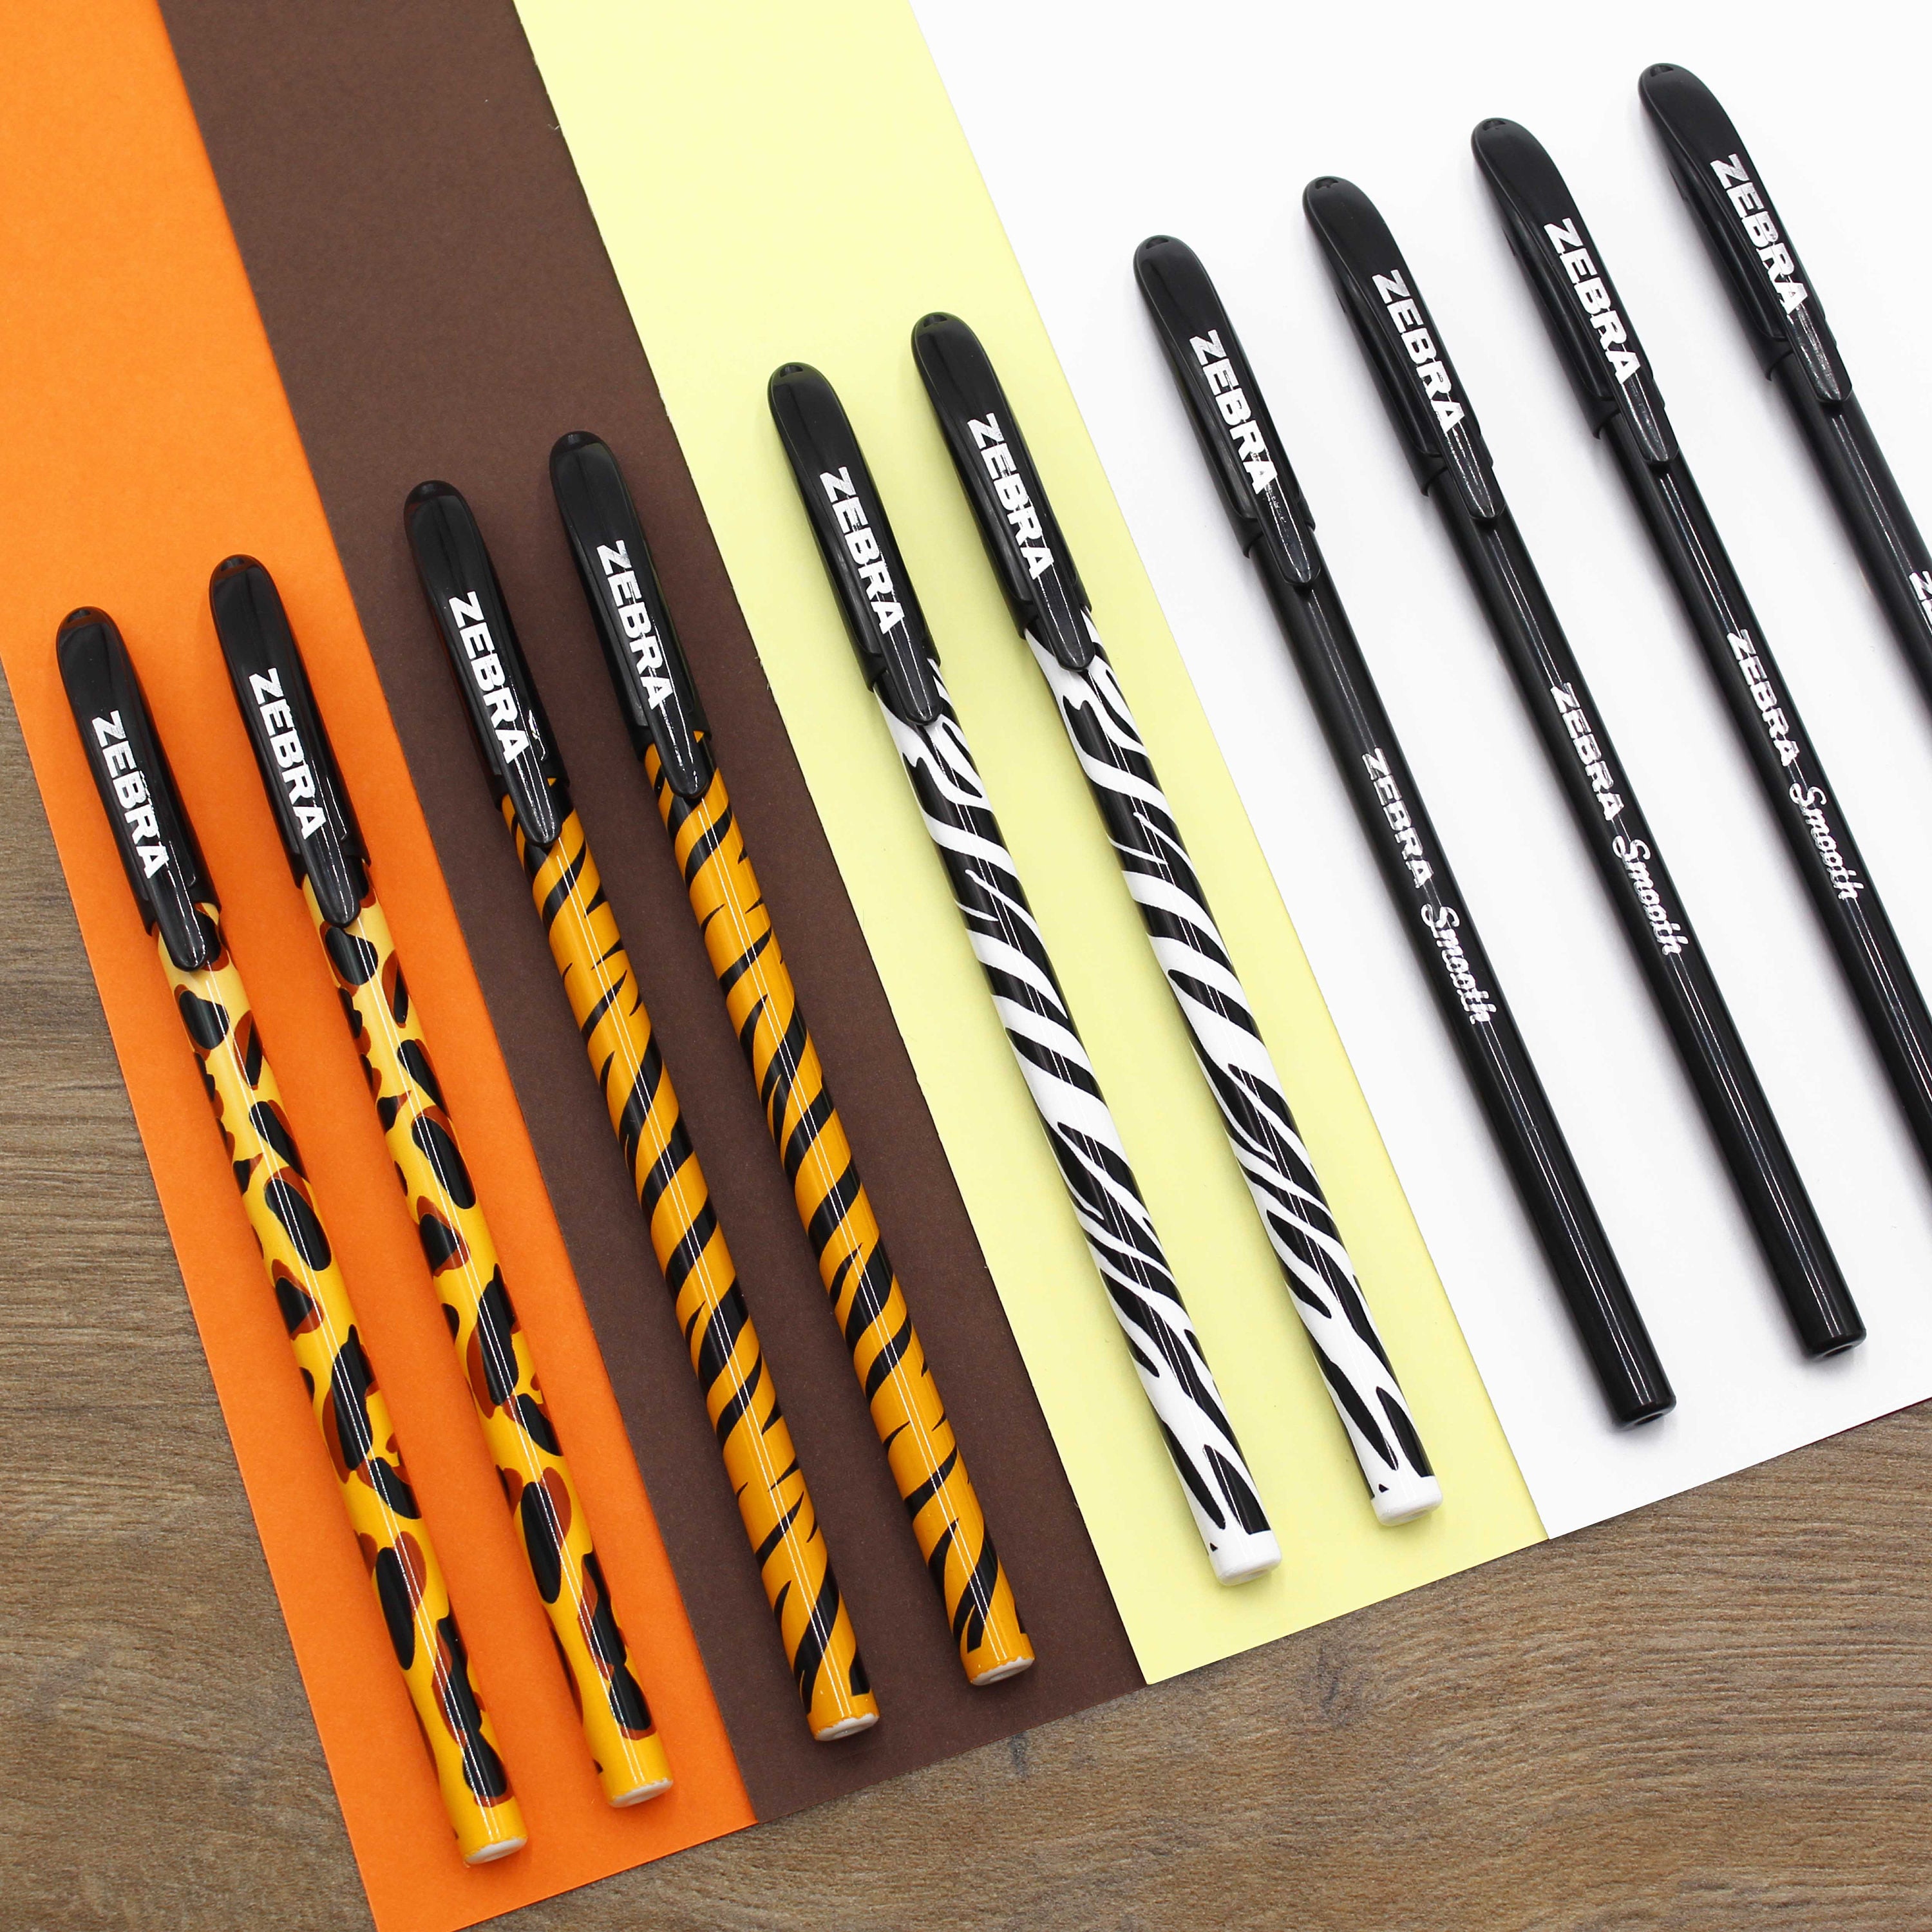 Zebra Doodler'z Gel Pen | Stick | Bold 1 mm | Assorted Ink and Barrel Colors | 10/Pack